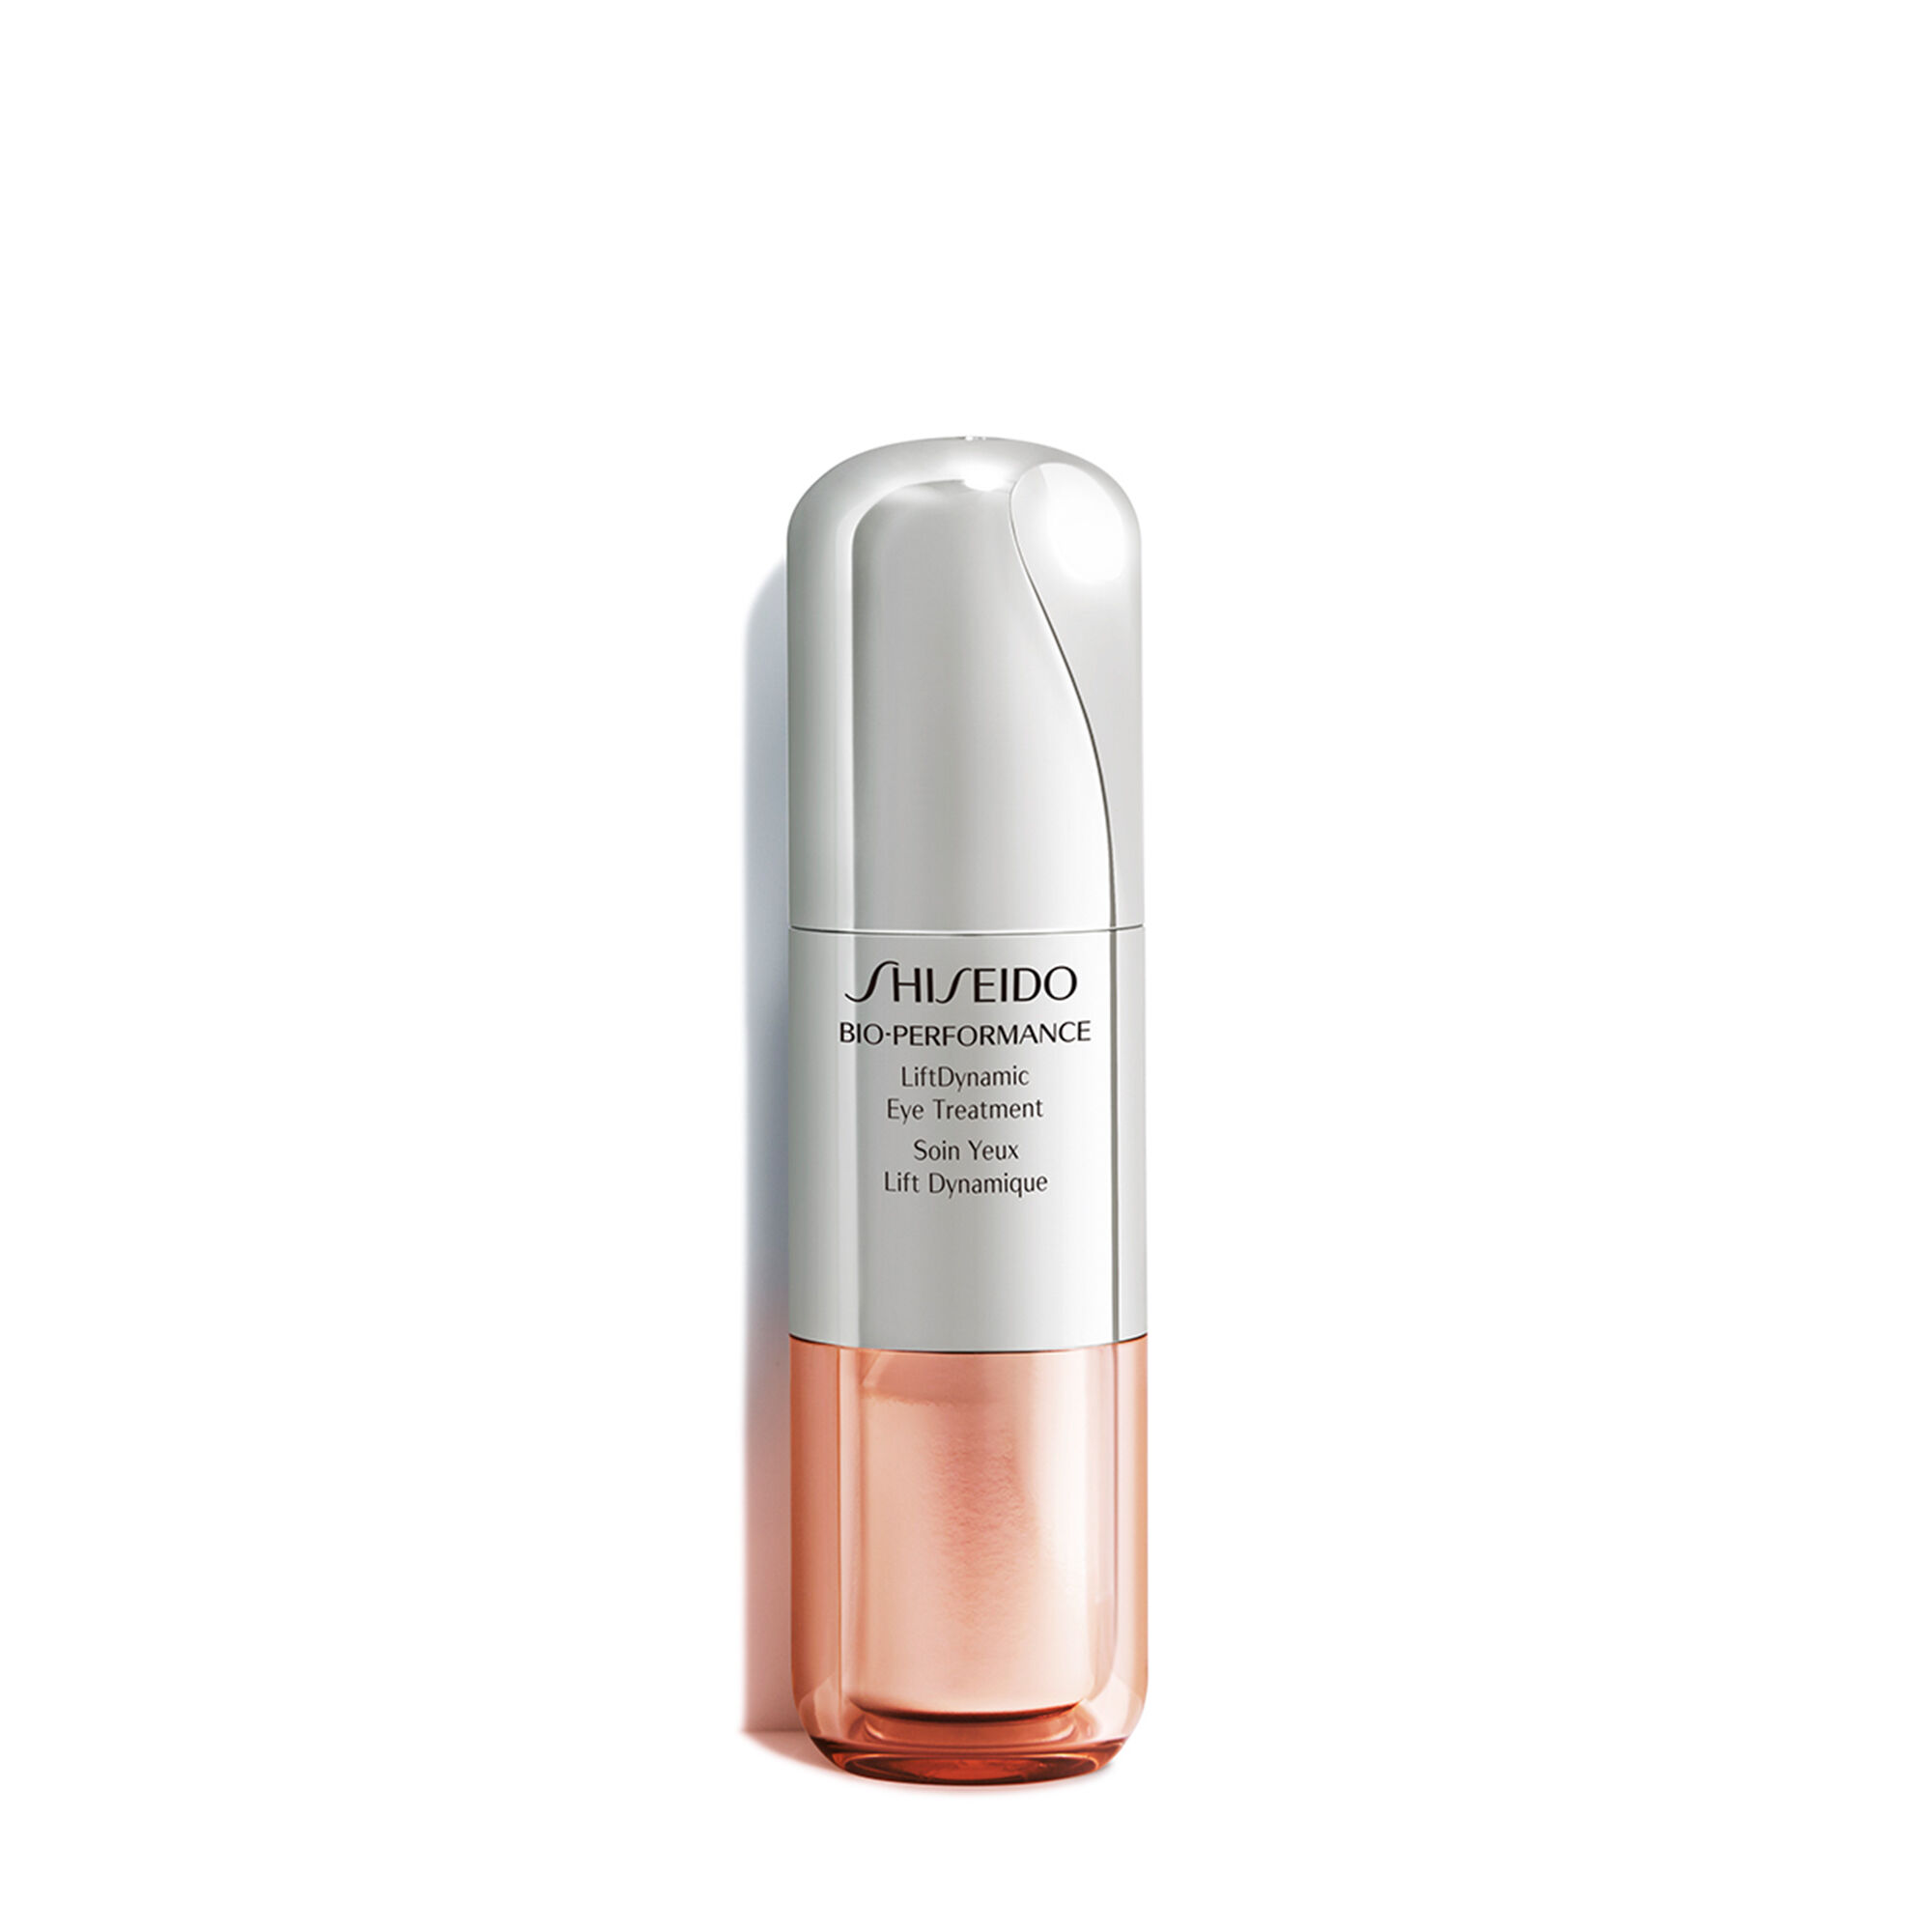 Shiseido Bio-performance Liftdynamic Eye Treatment By Shiseido for Unisex - 0.52 Oz Treatment, 0.52 Oz